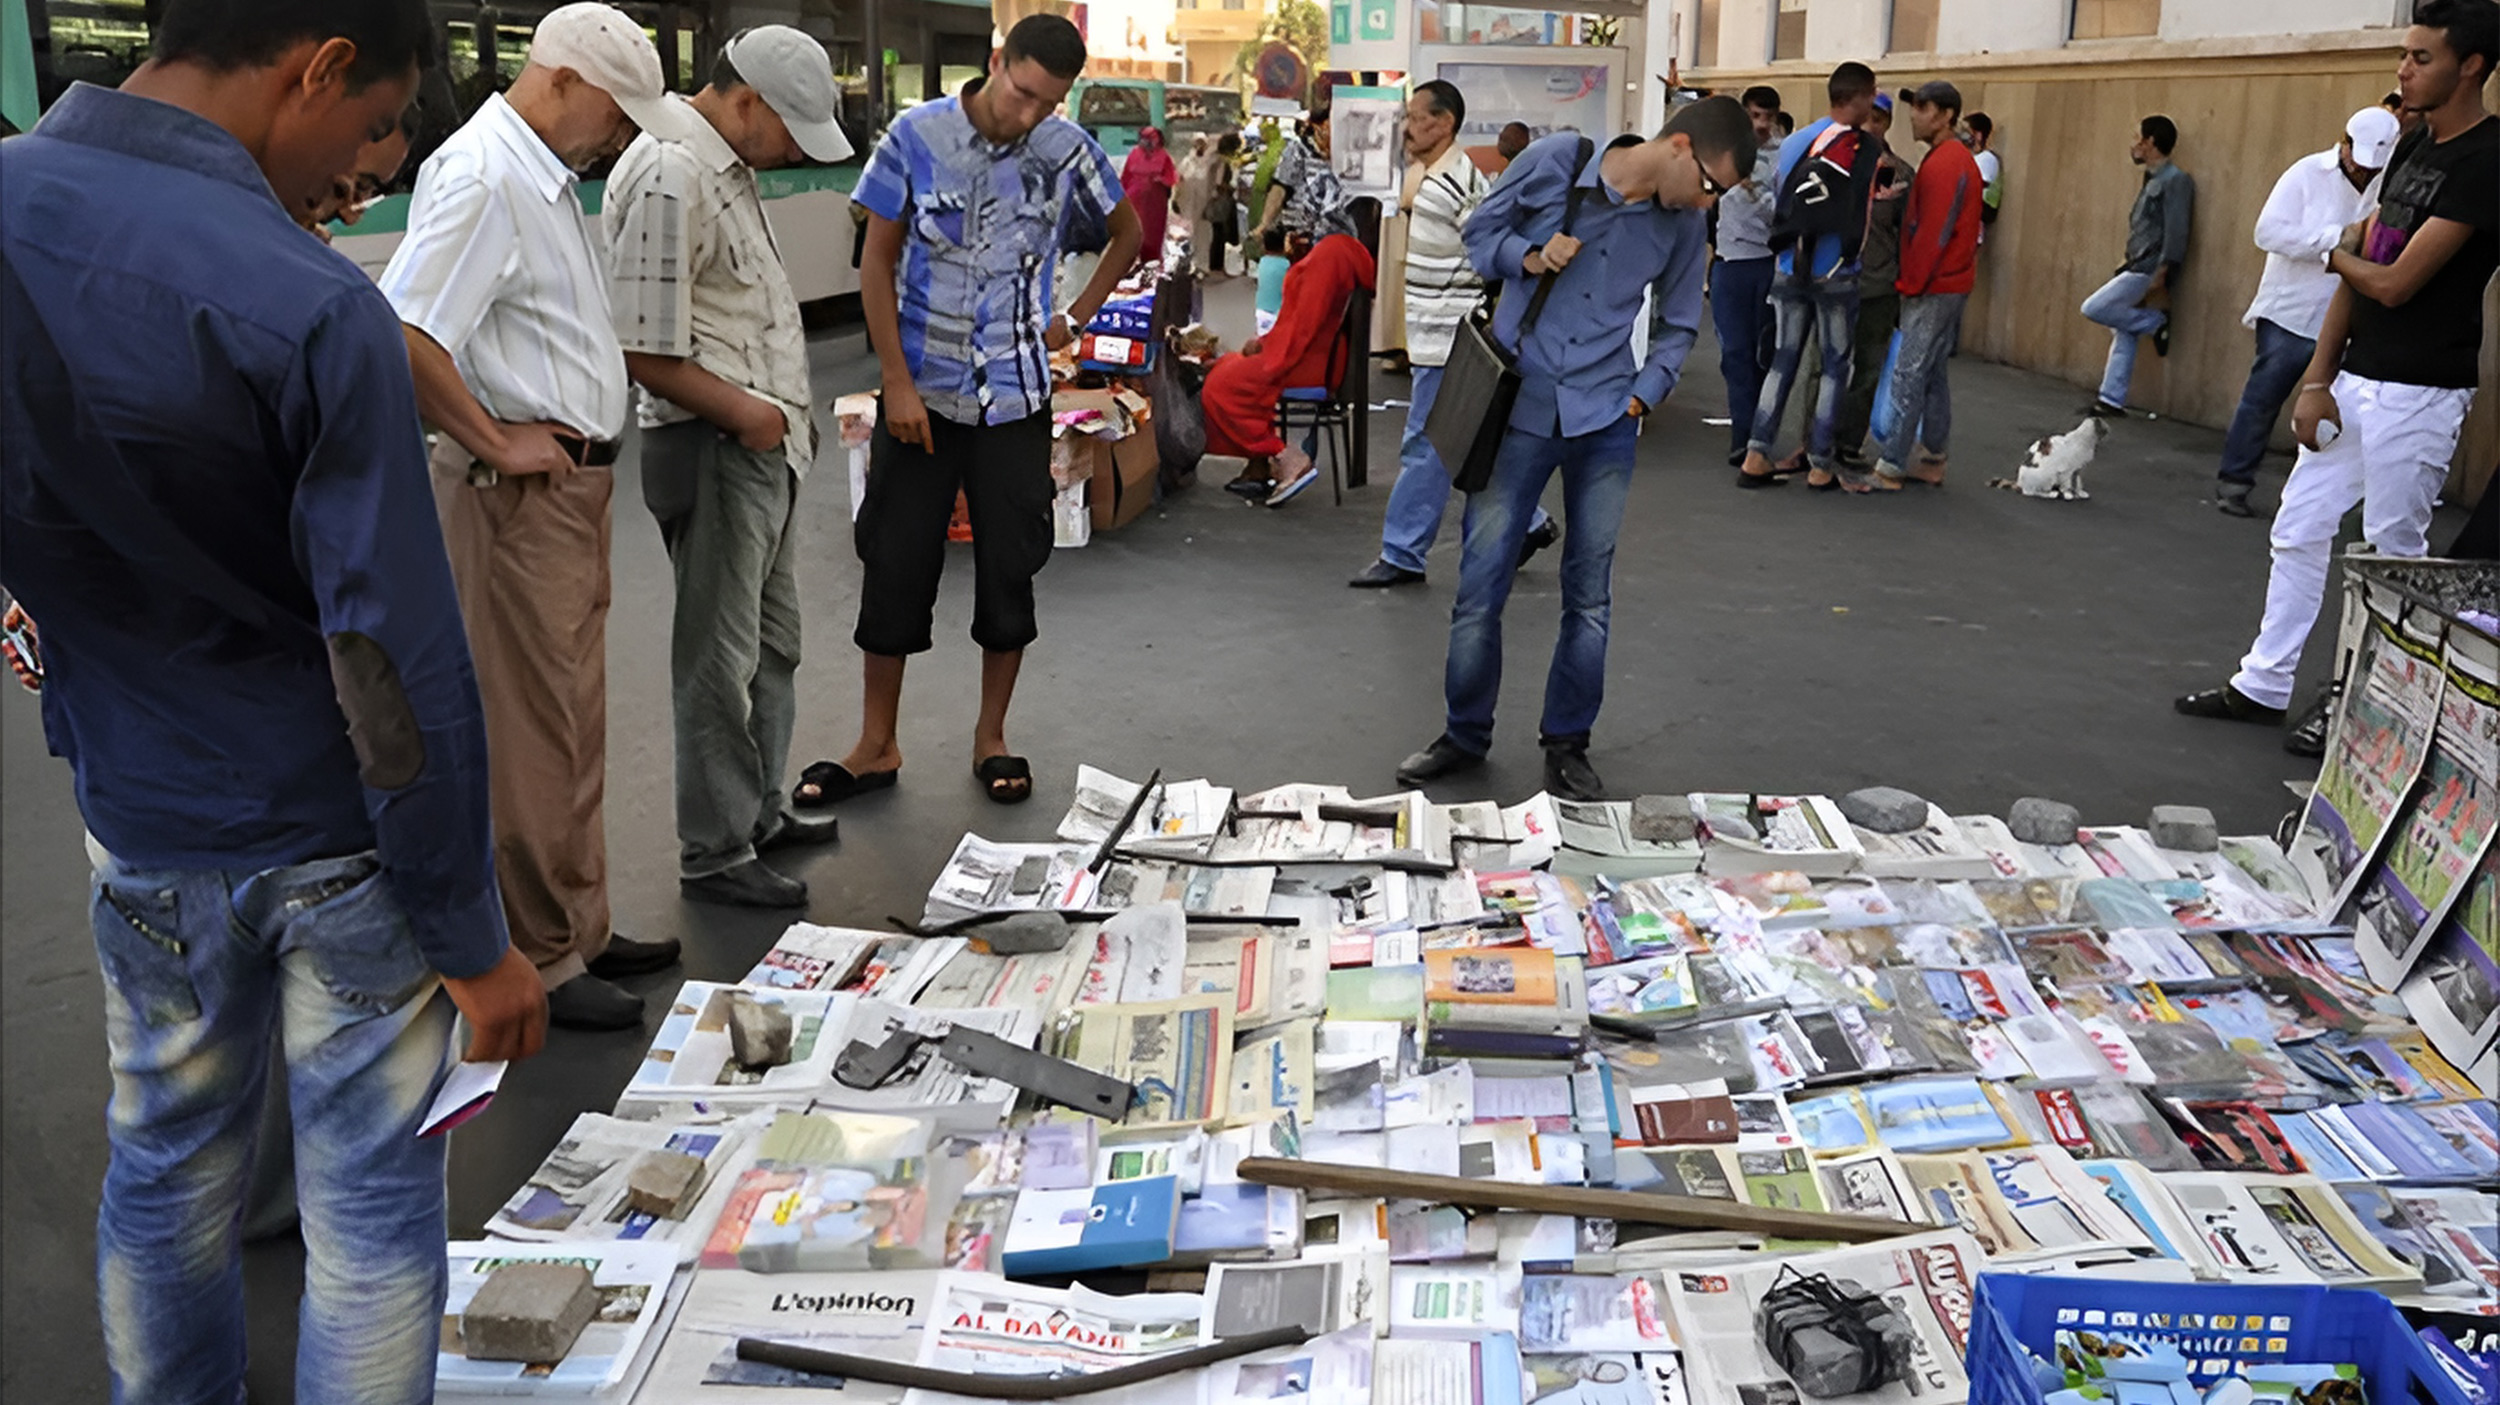 حرية الصحافة بالمغرب واستقلالية المؤسسات الصحافية تتطلبان توفير نموذج اقتصادي متكامل للمنشأة الصحافية (الجزيرة)